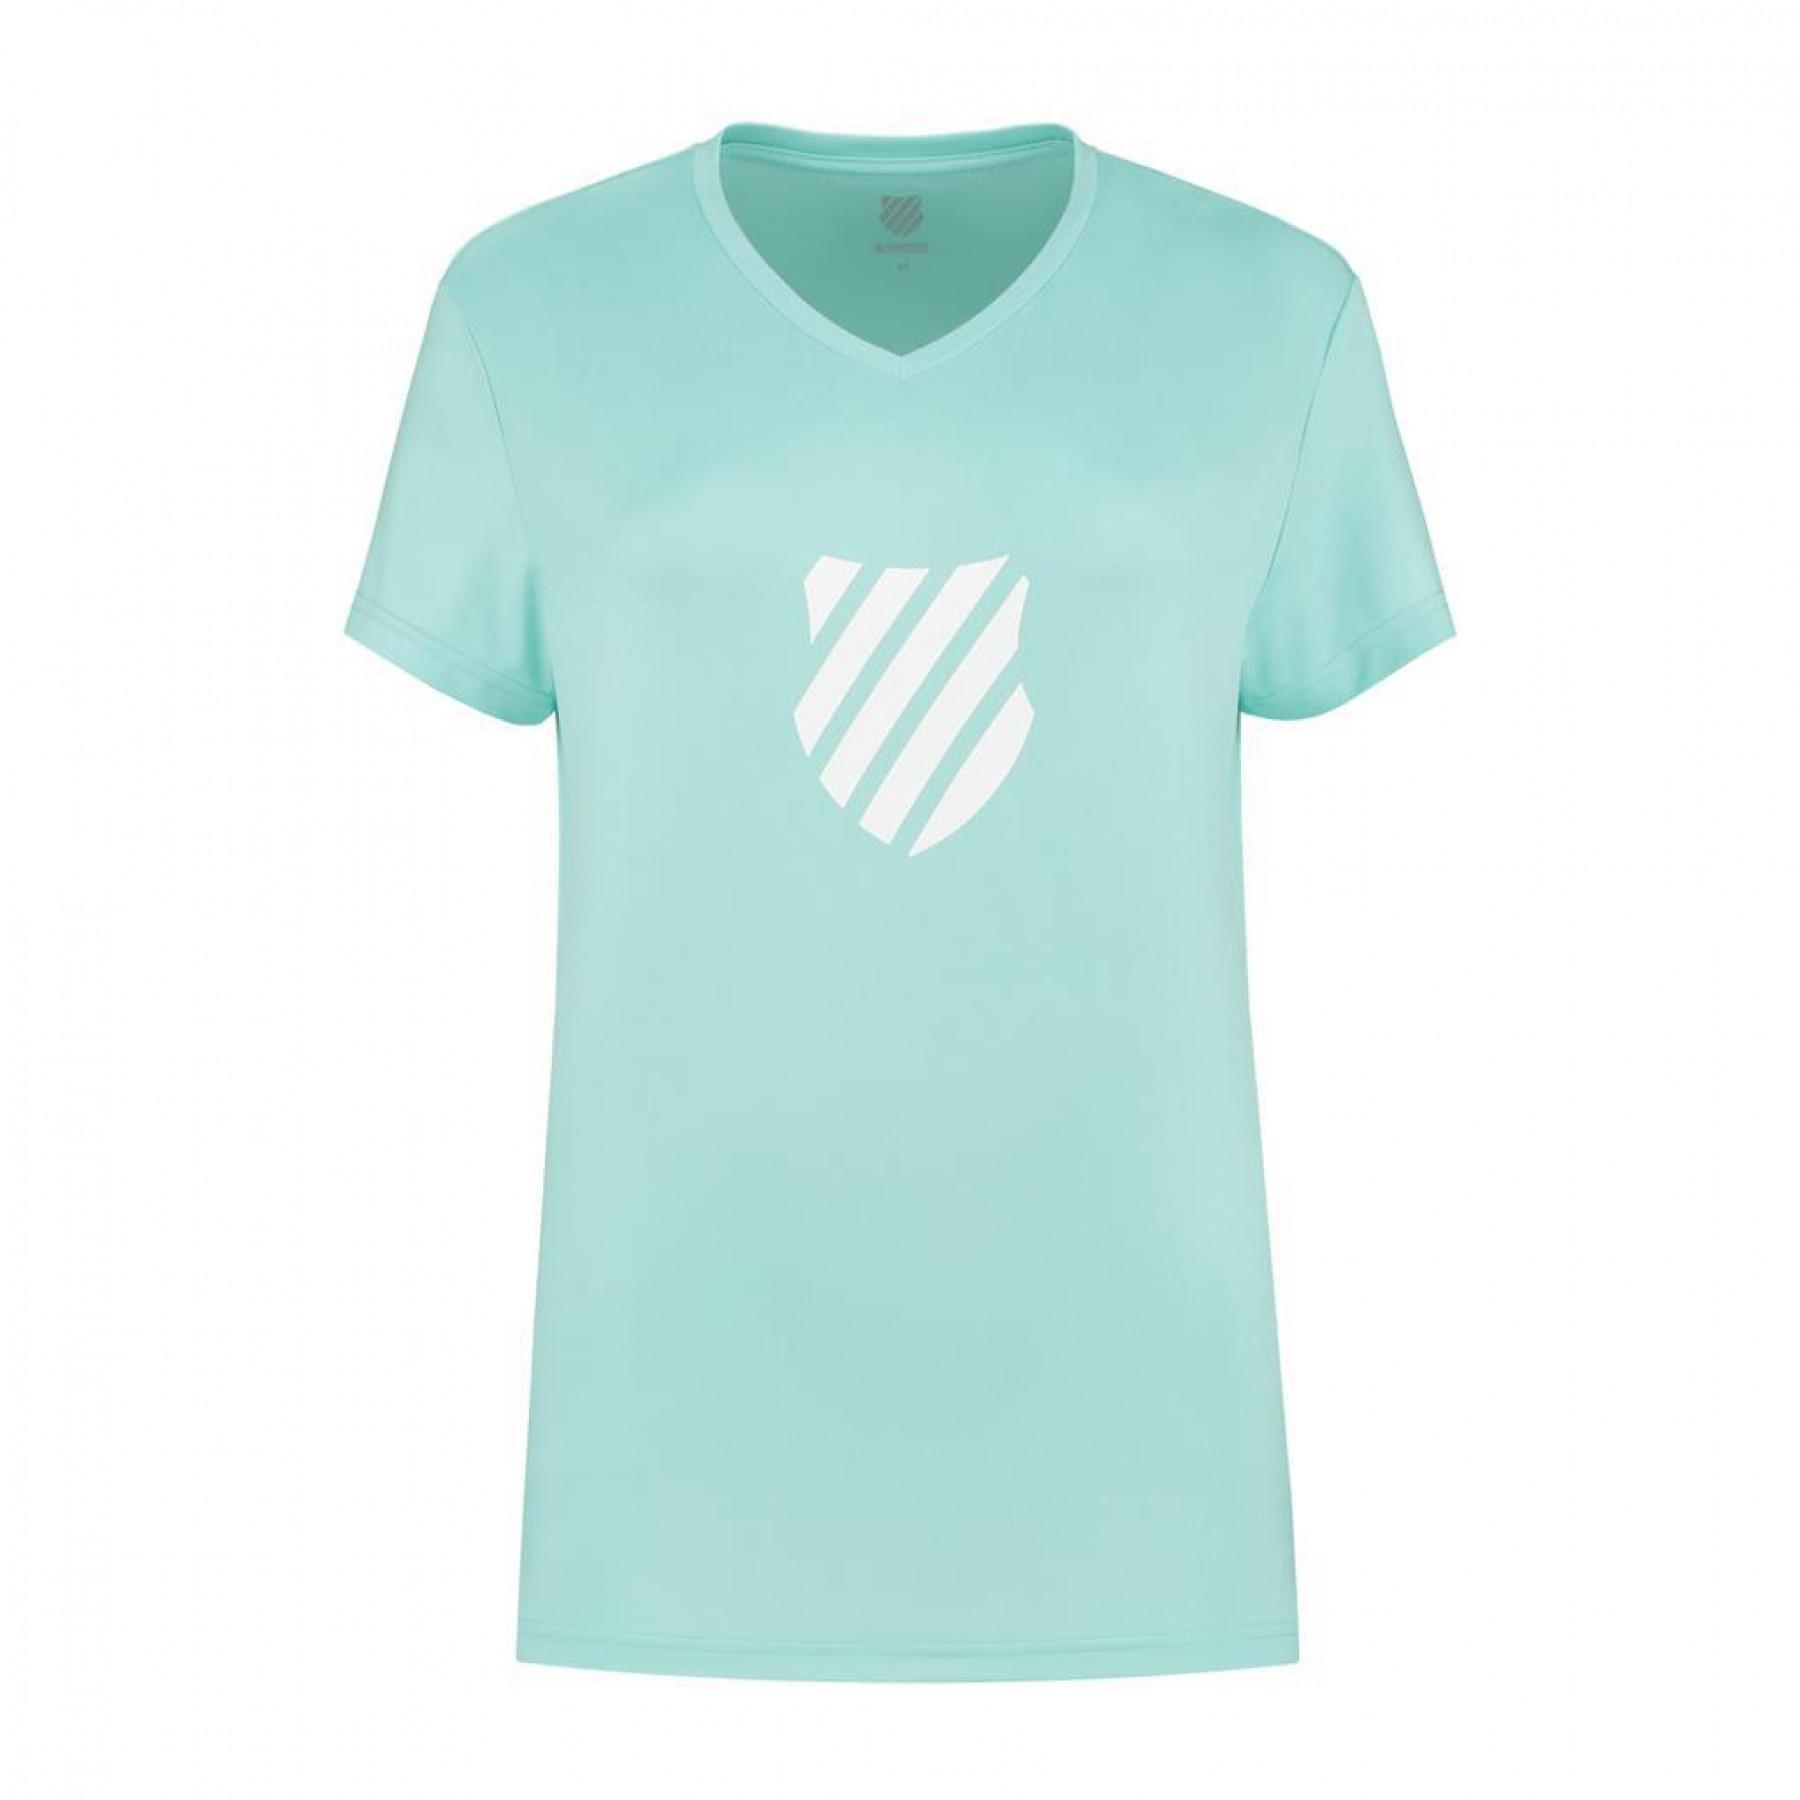 Women's T-shirt K-Swiss hypercourt express logo